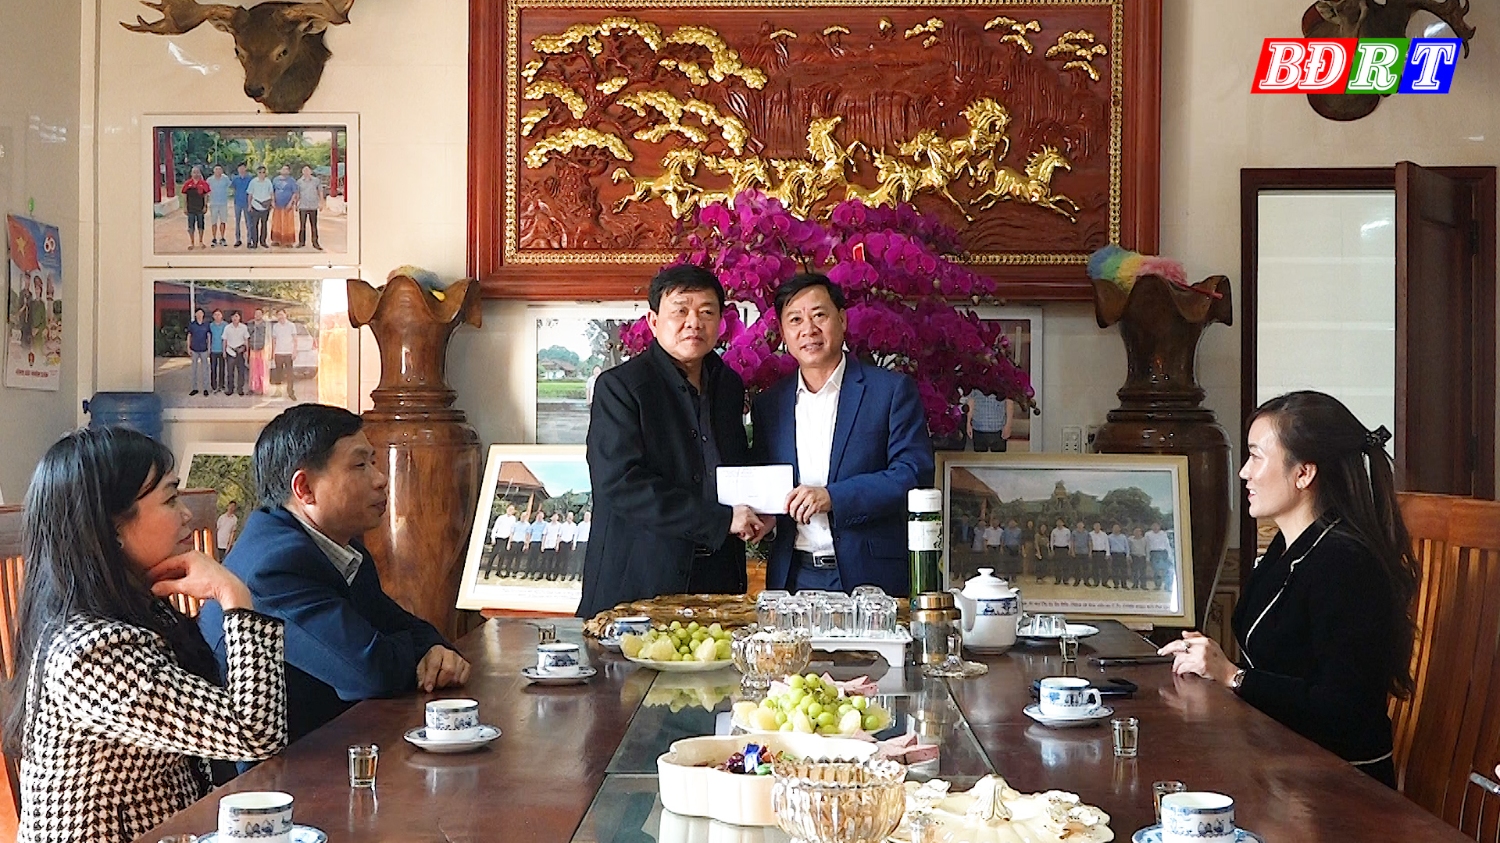 Đồng chí Chủ tịch UBND thị xã tặng quà nhân dịp đầu năm mới cho Công ty TNHH Đoàn Kết Phú Quý.